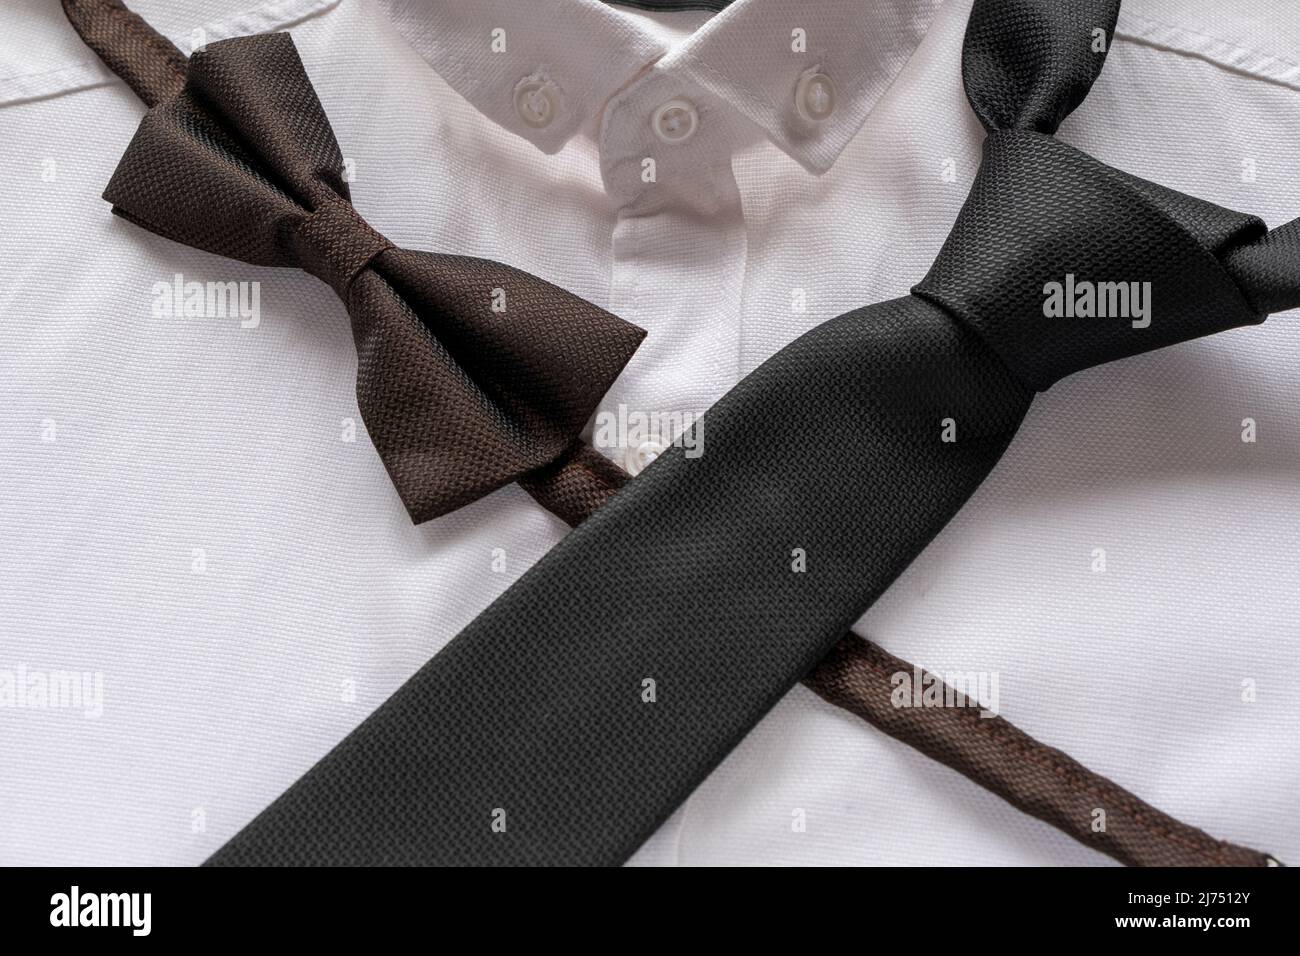 Cravate noire et noeud papillon sur chemise blanche, concept de mode hommes, accessoires de couleur noire, idée de vêtements hommes, vue assise Banque D'Images